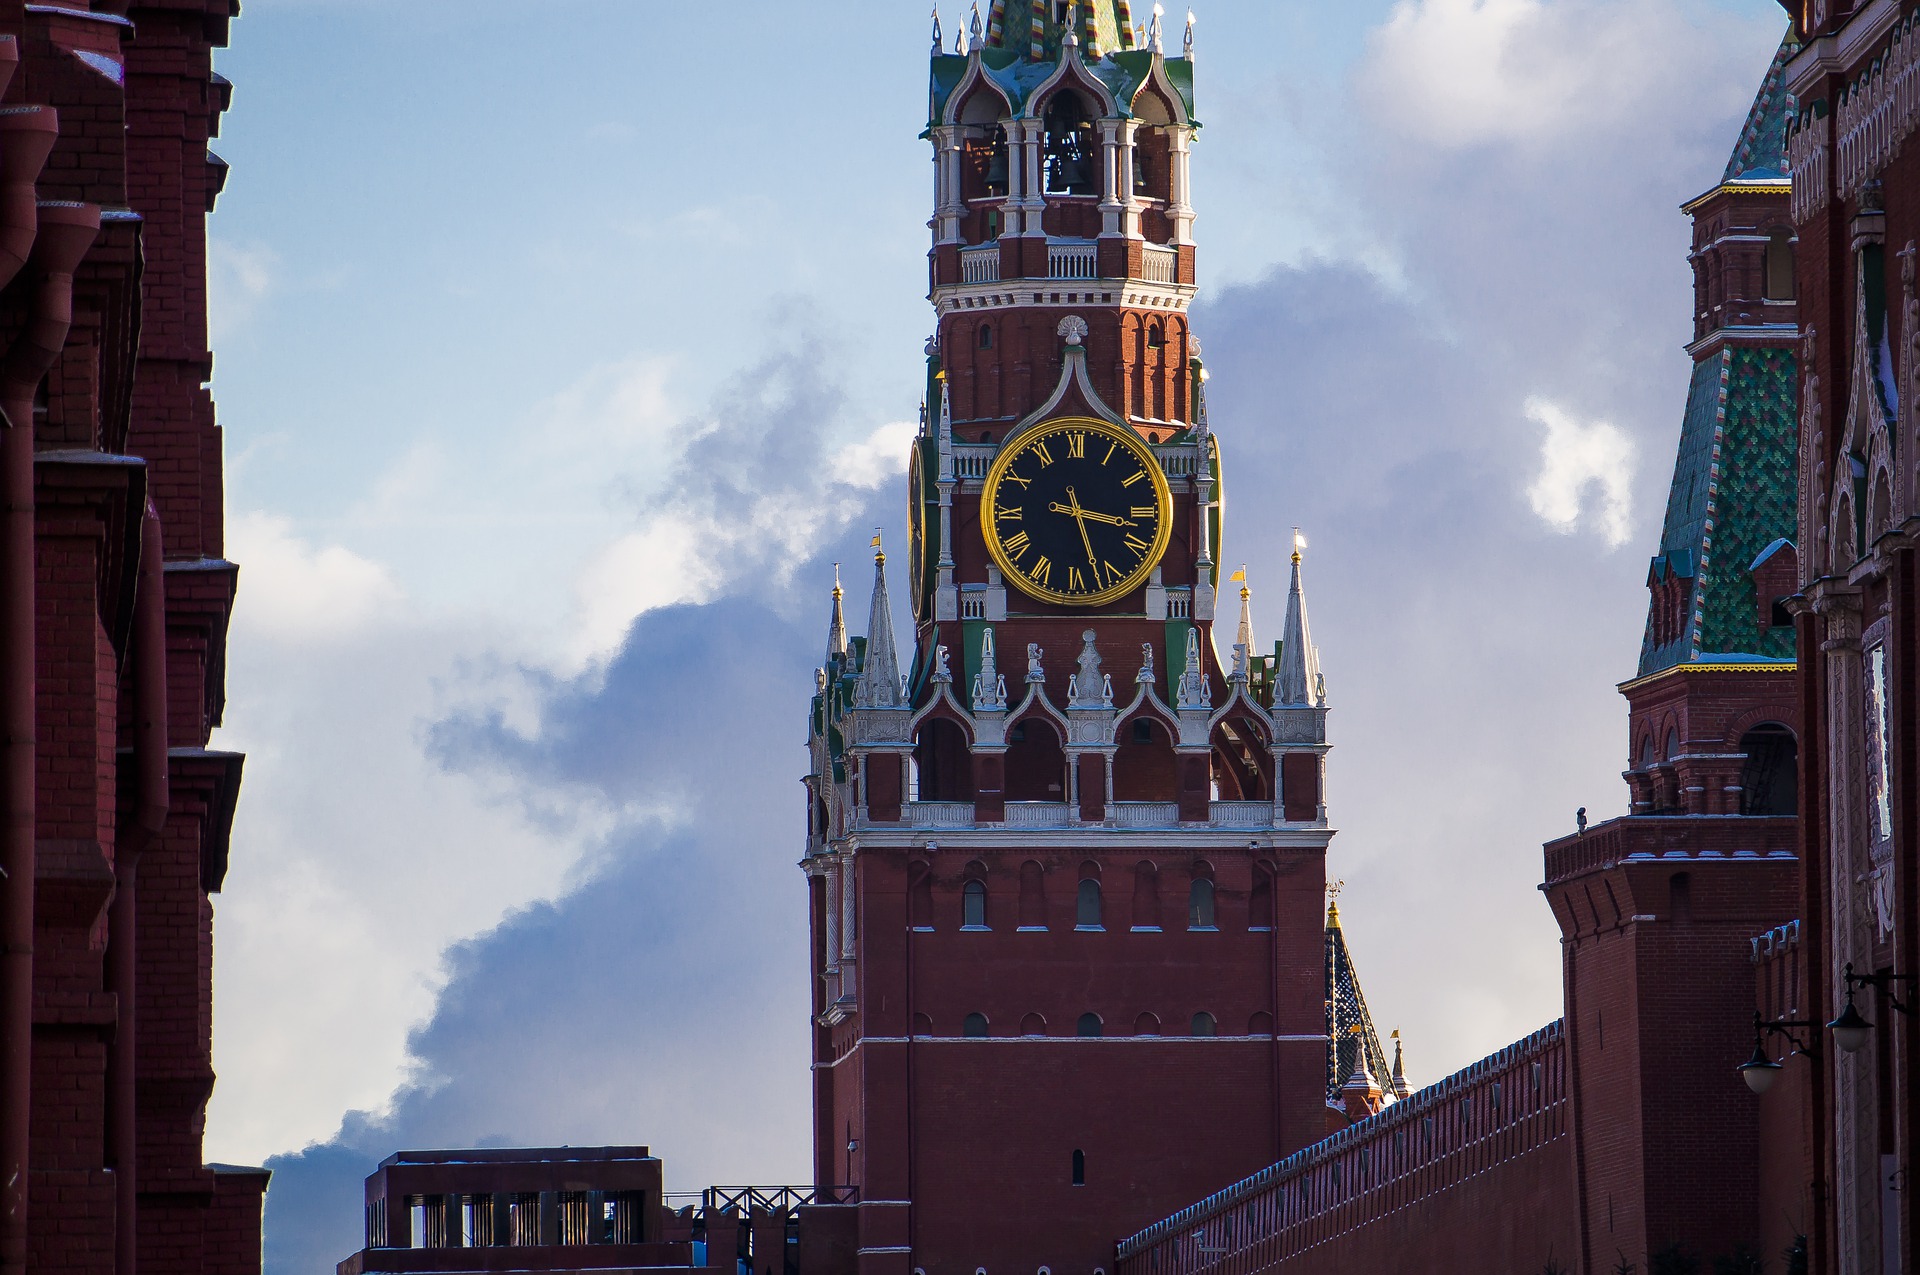 кремлевские куранты на спасской башне